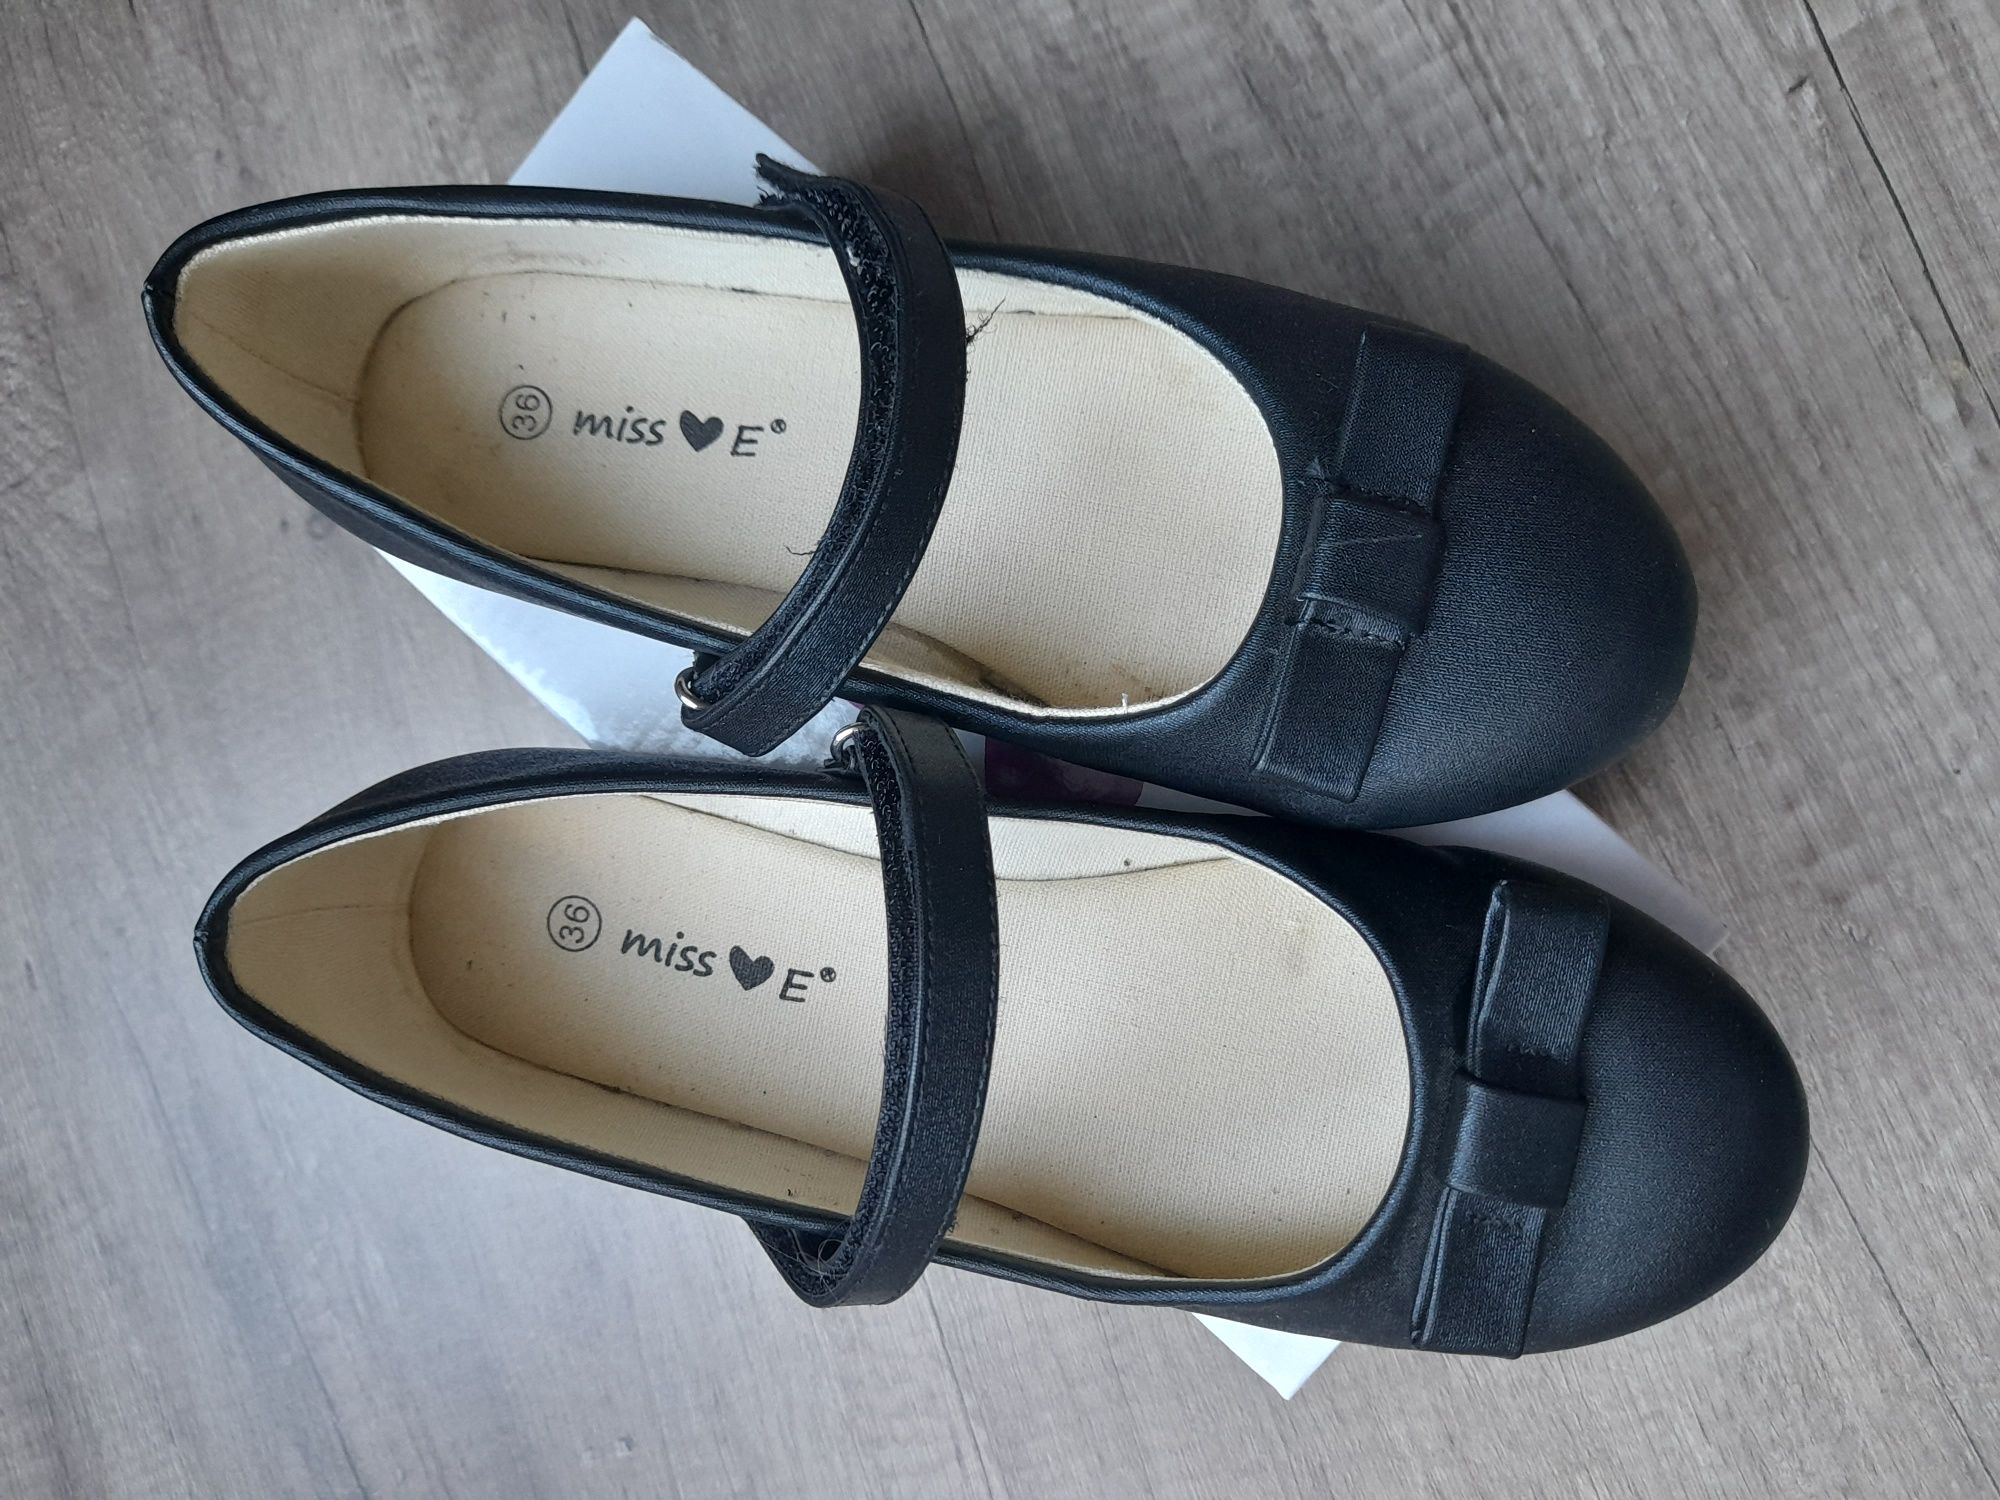 Baleriny, pantofelki buty czarne r. 36